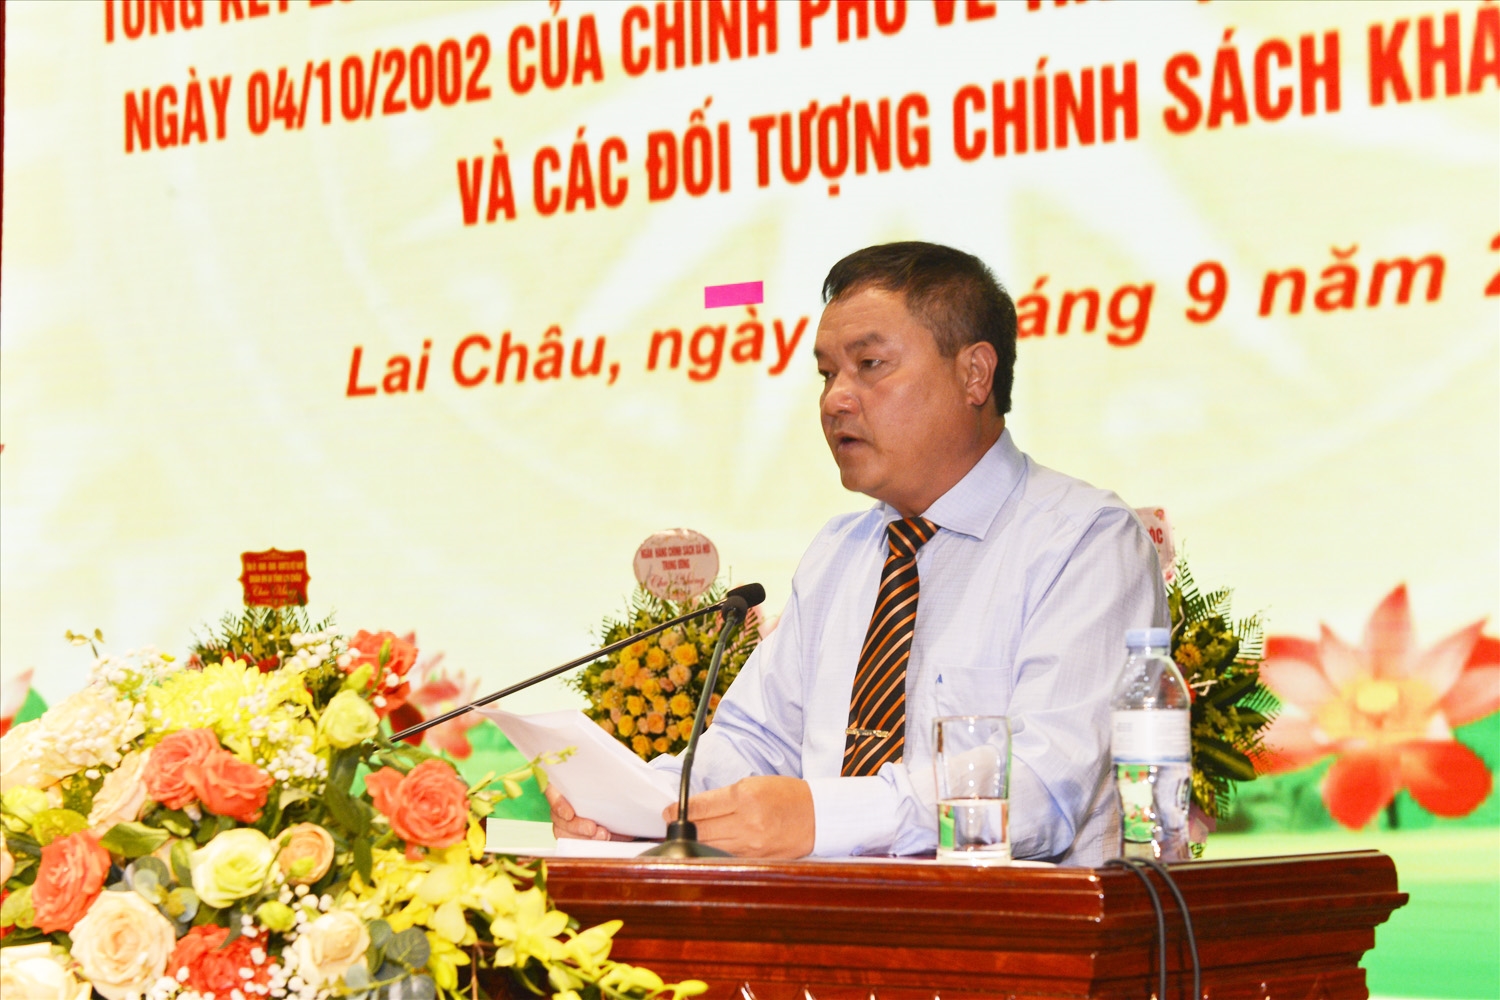 Ông Giàng A Tính - Phó Chủ tịch UBND tỉnh Lai Châu khai mạc Hội nghị